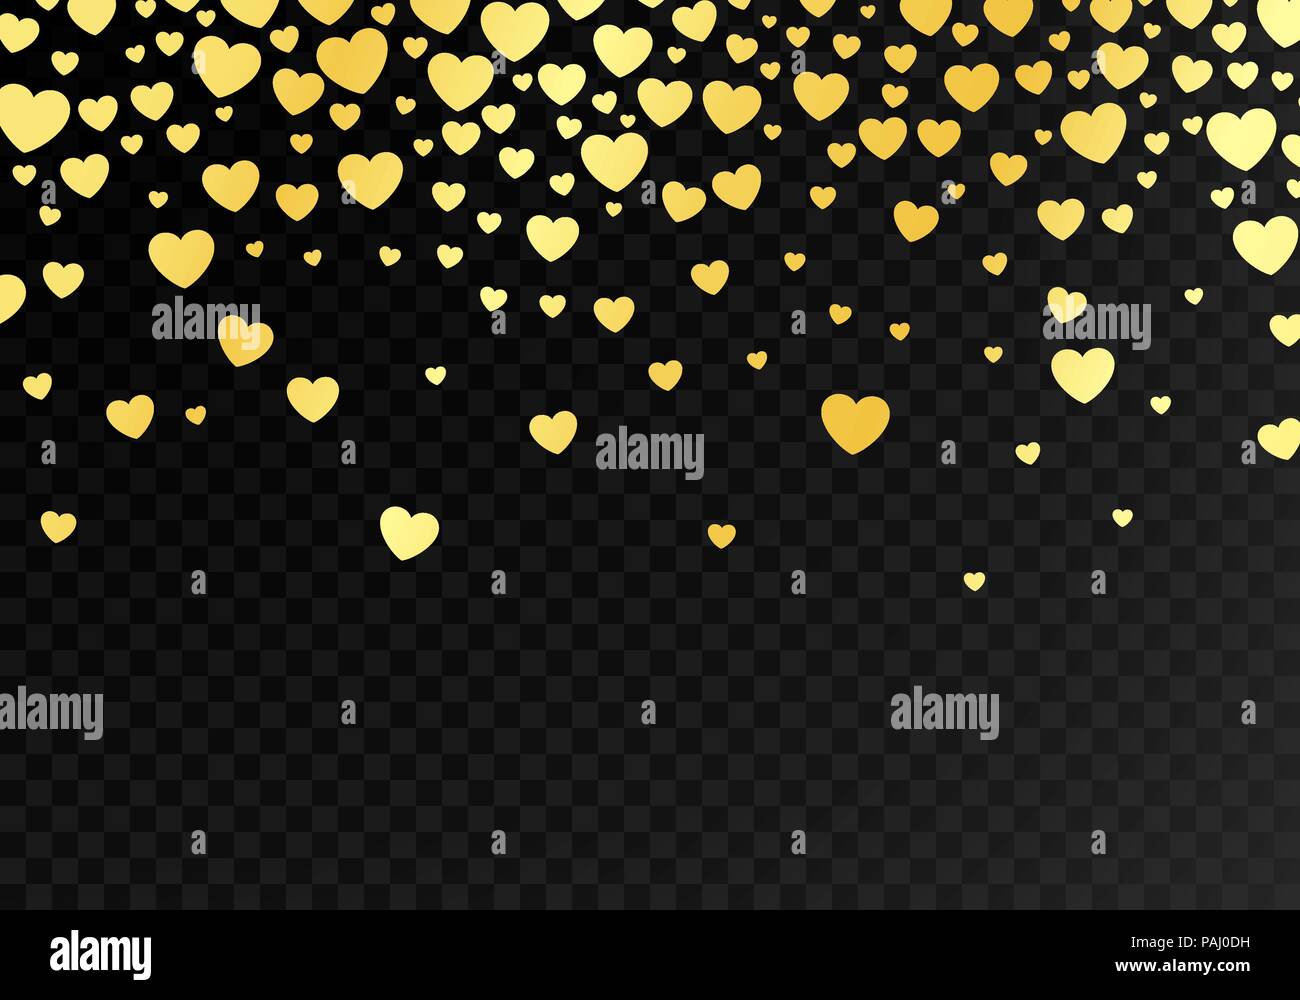 Zusammenfassung der dunkle Hintergrund mit hellen, goldenen Herzen. Vorlage Hintergrund für Design und Banner. Happy Valentines Tag Tapeten. Vektor krank Stock Vektor